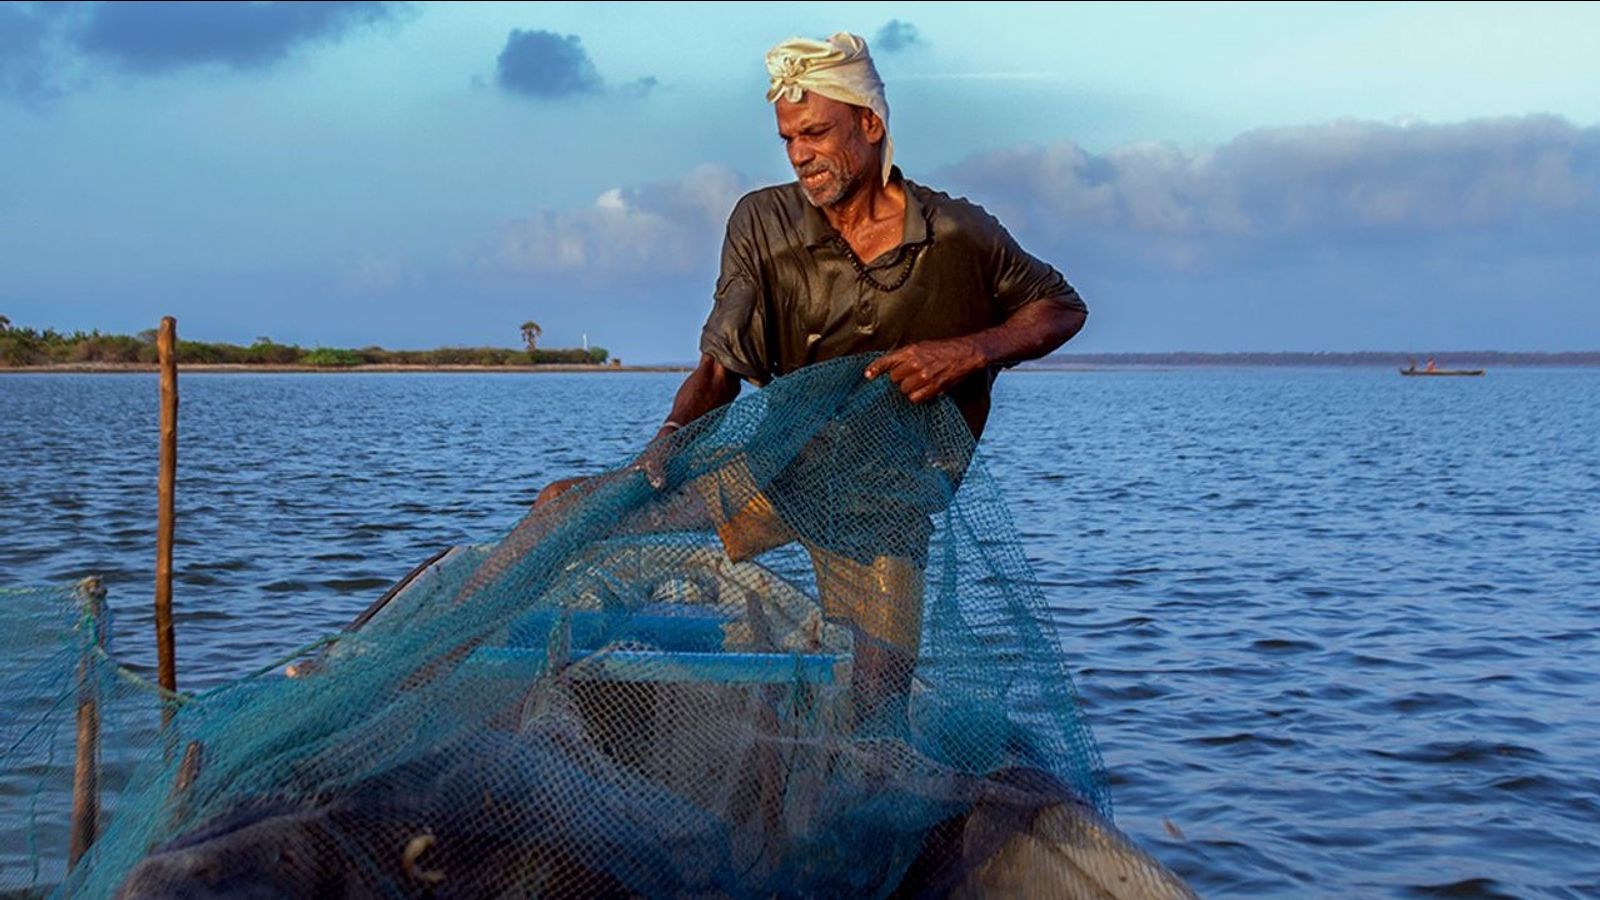 Kämpfen Sie um Angelmöglichkeiten zu erschwinglichen Preisen!  Weisen Sie kommunale Provokationen zurück, die srilankische und indische Fischer spalten!